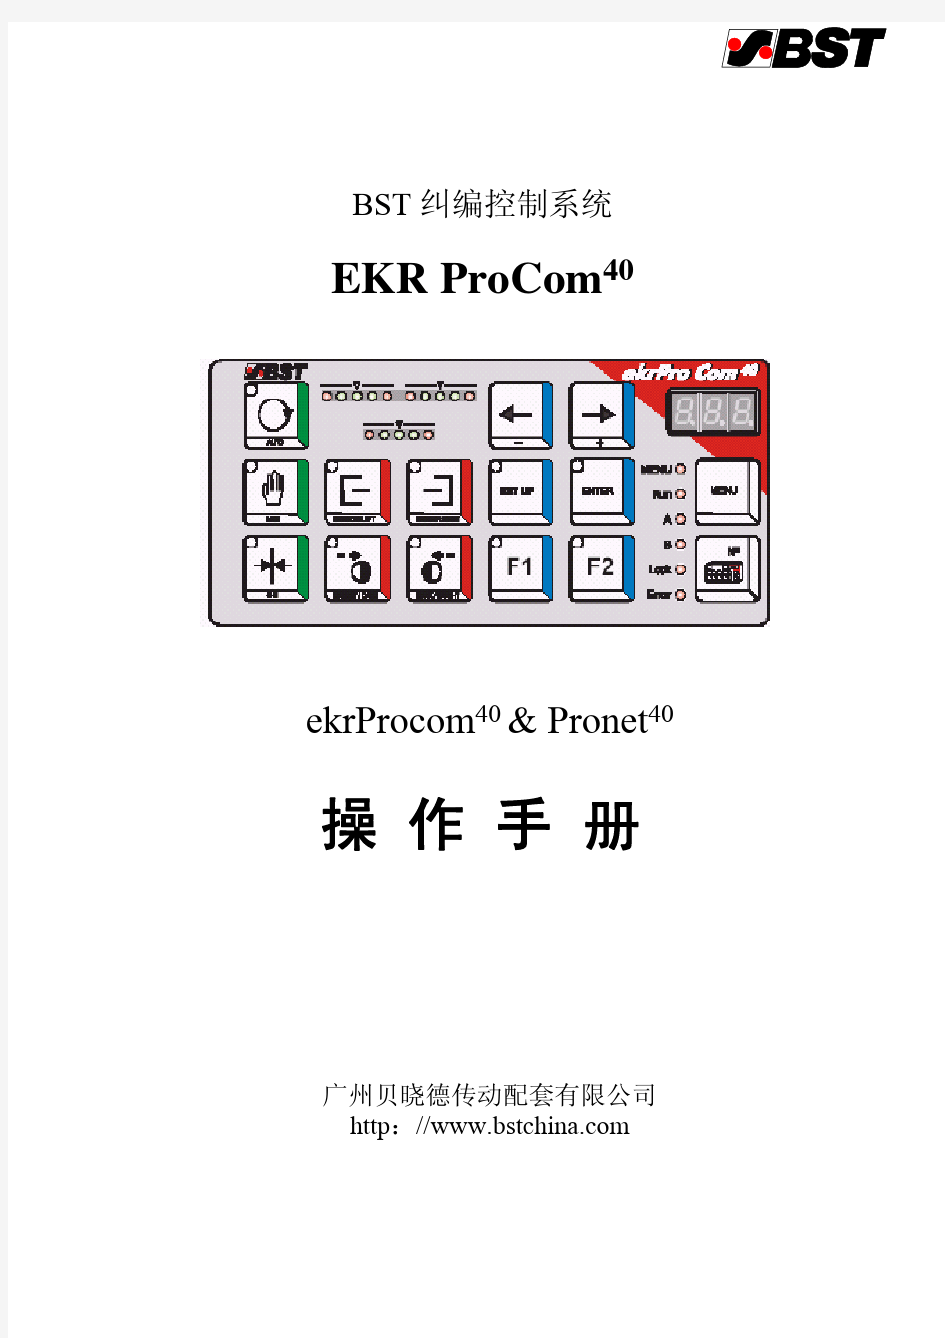 BST操作说明书ekrProcom40 & Pronet40 060704